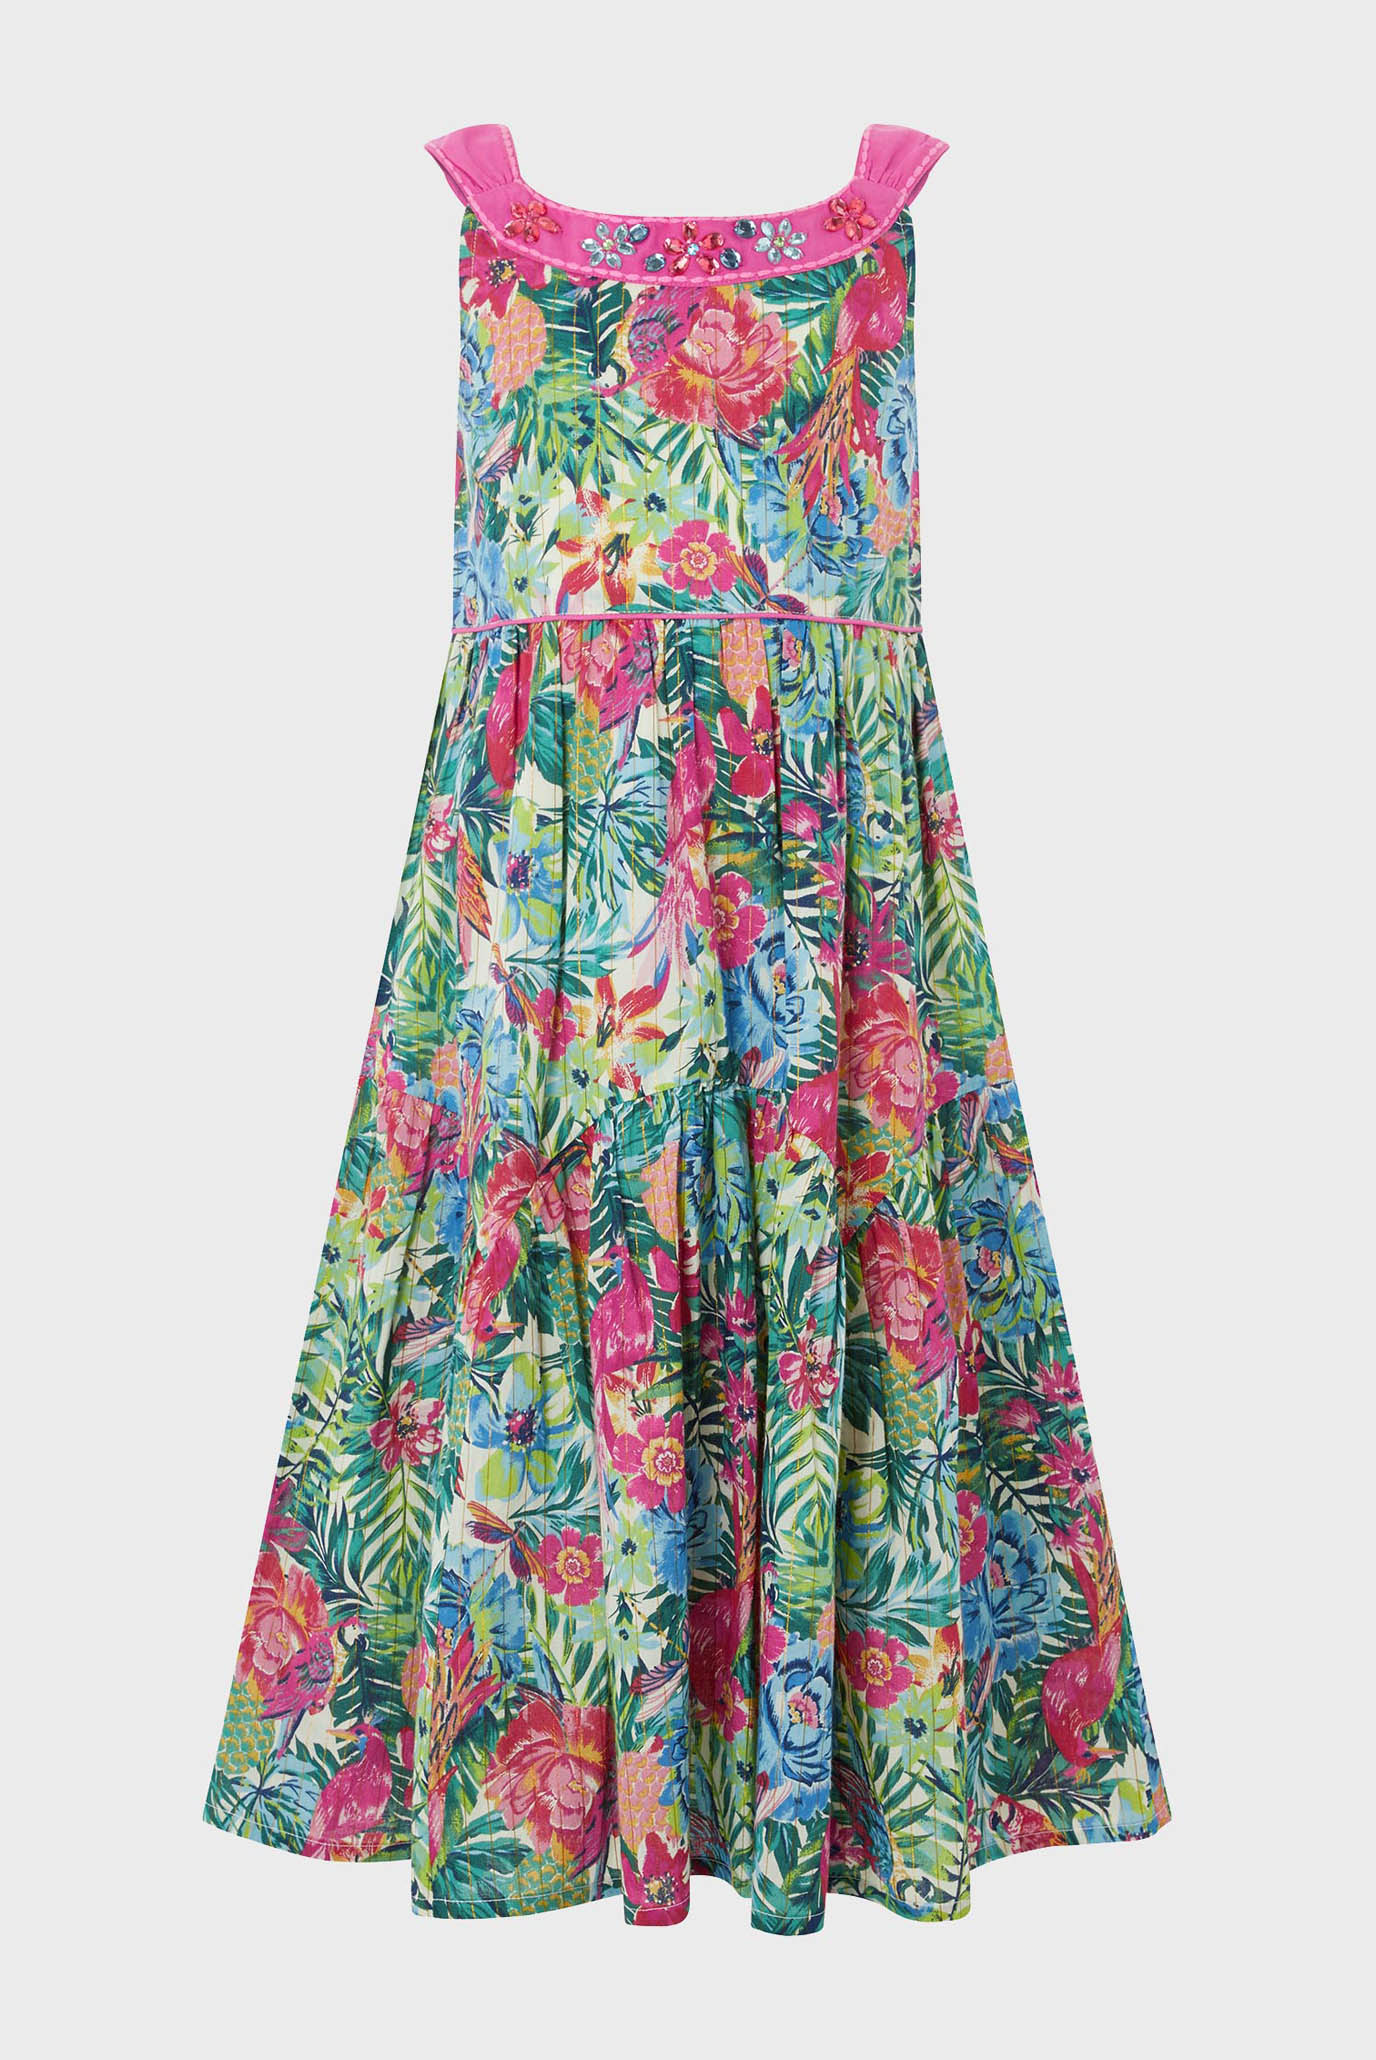 Дитяча сукня Tropical Maxi Dress 1